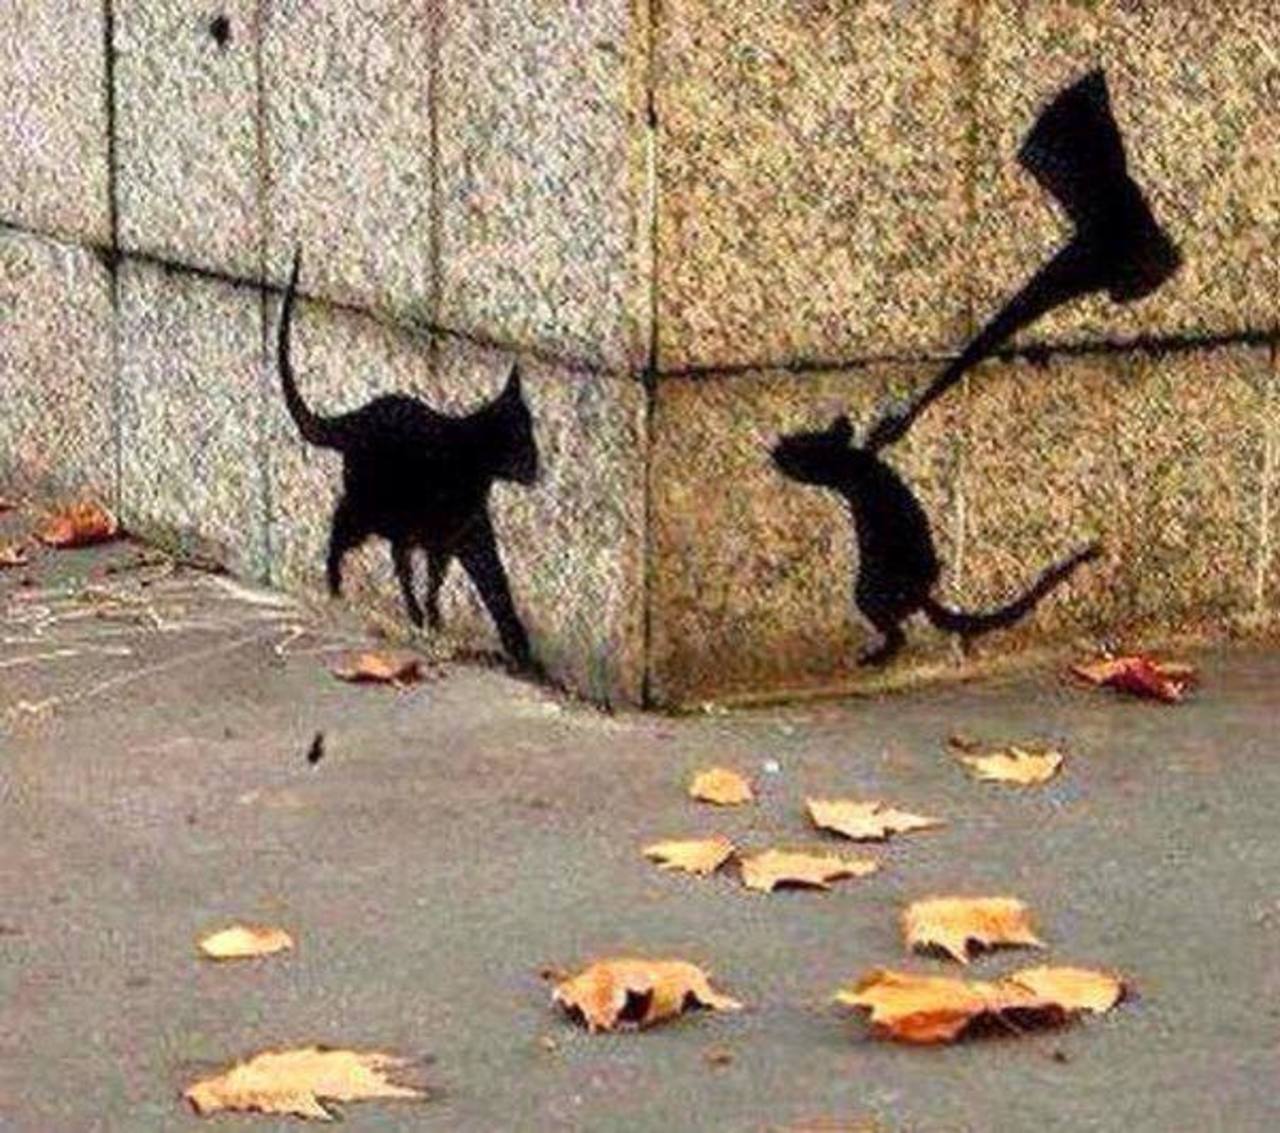 Tom & Jerry - #streetart #graffiti #art https://t.co/CLuqMqcDgQ